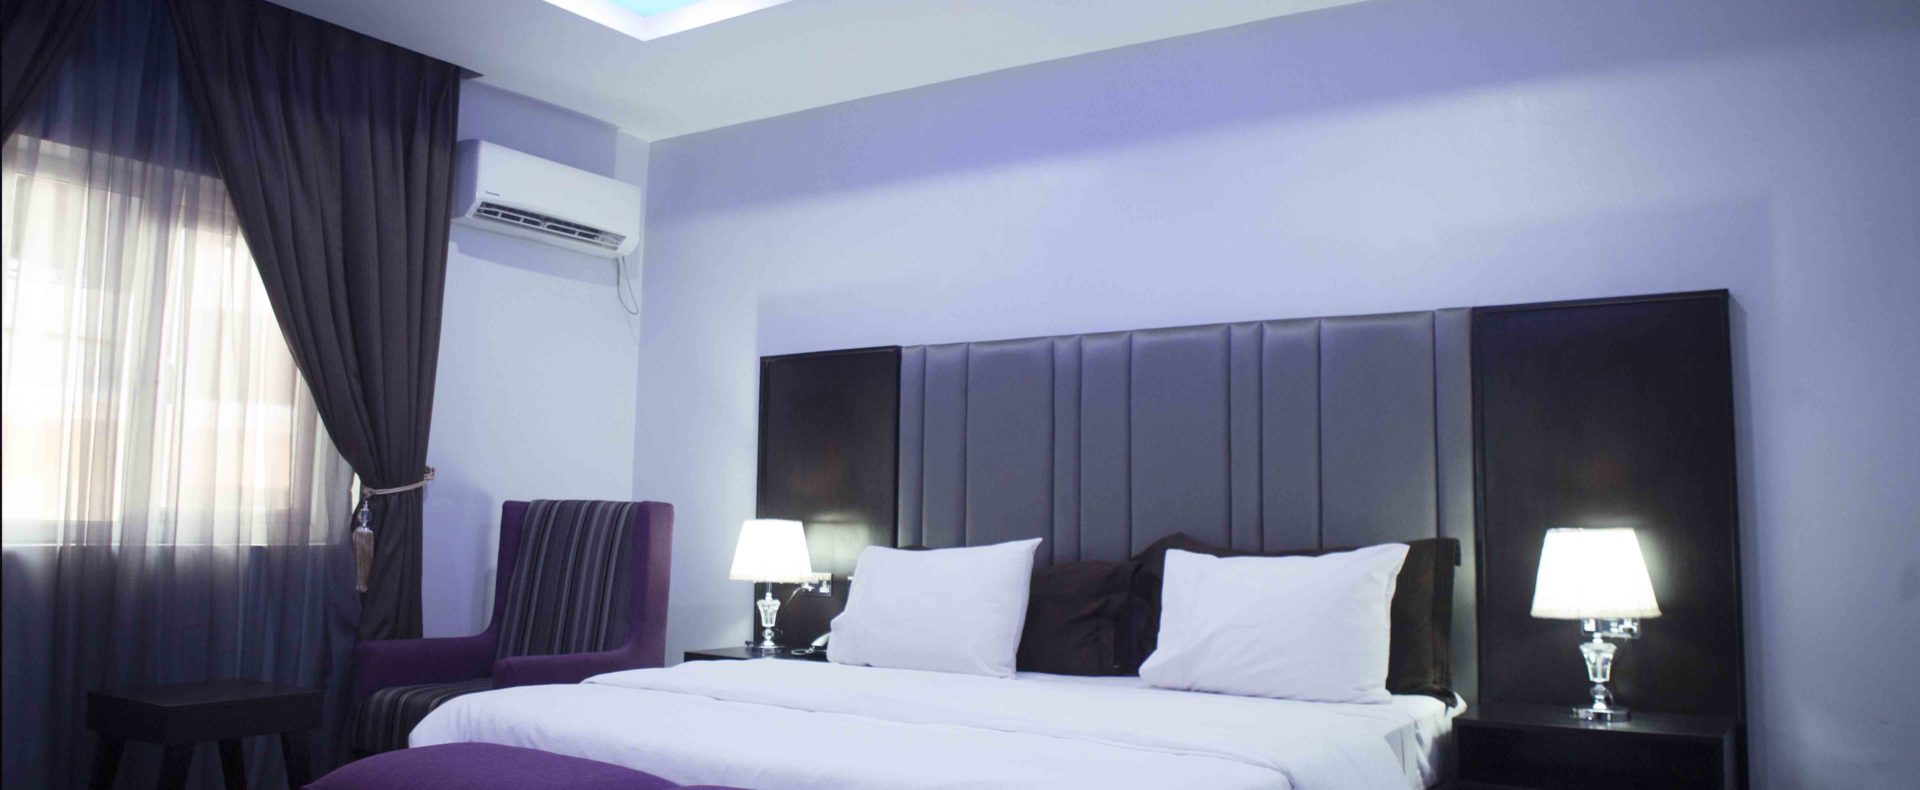 Hotel Standard Room In Lekki Phase1 Nigeria